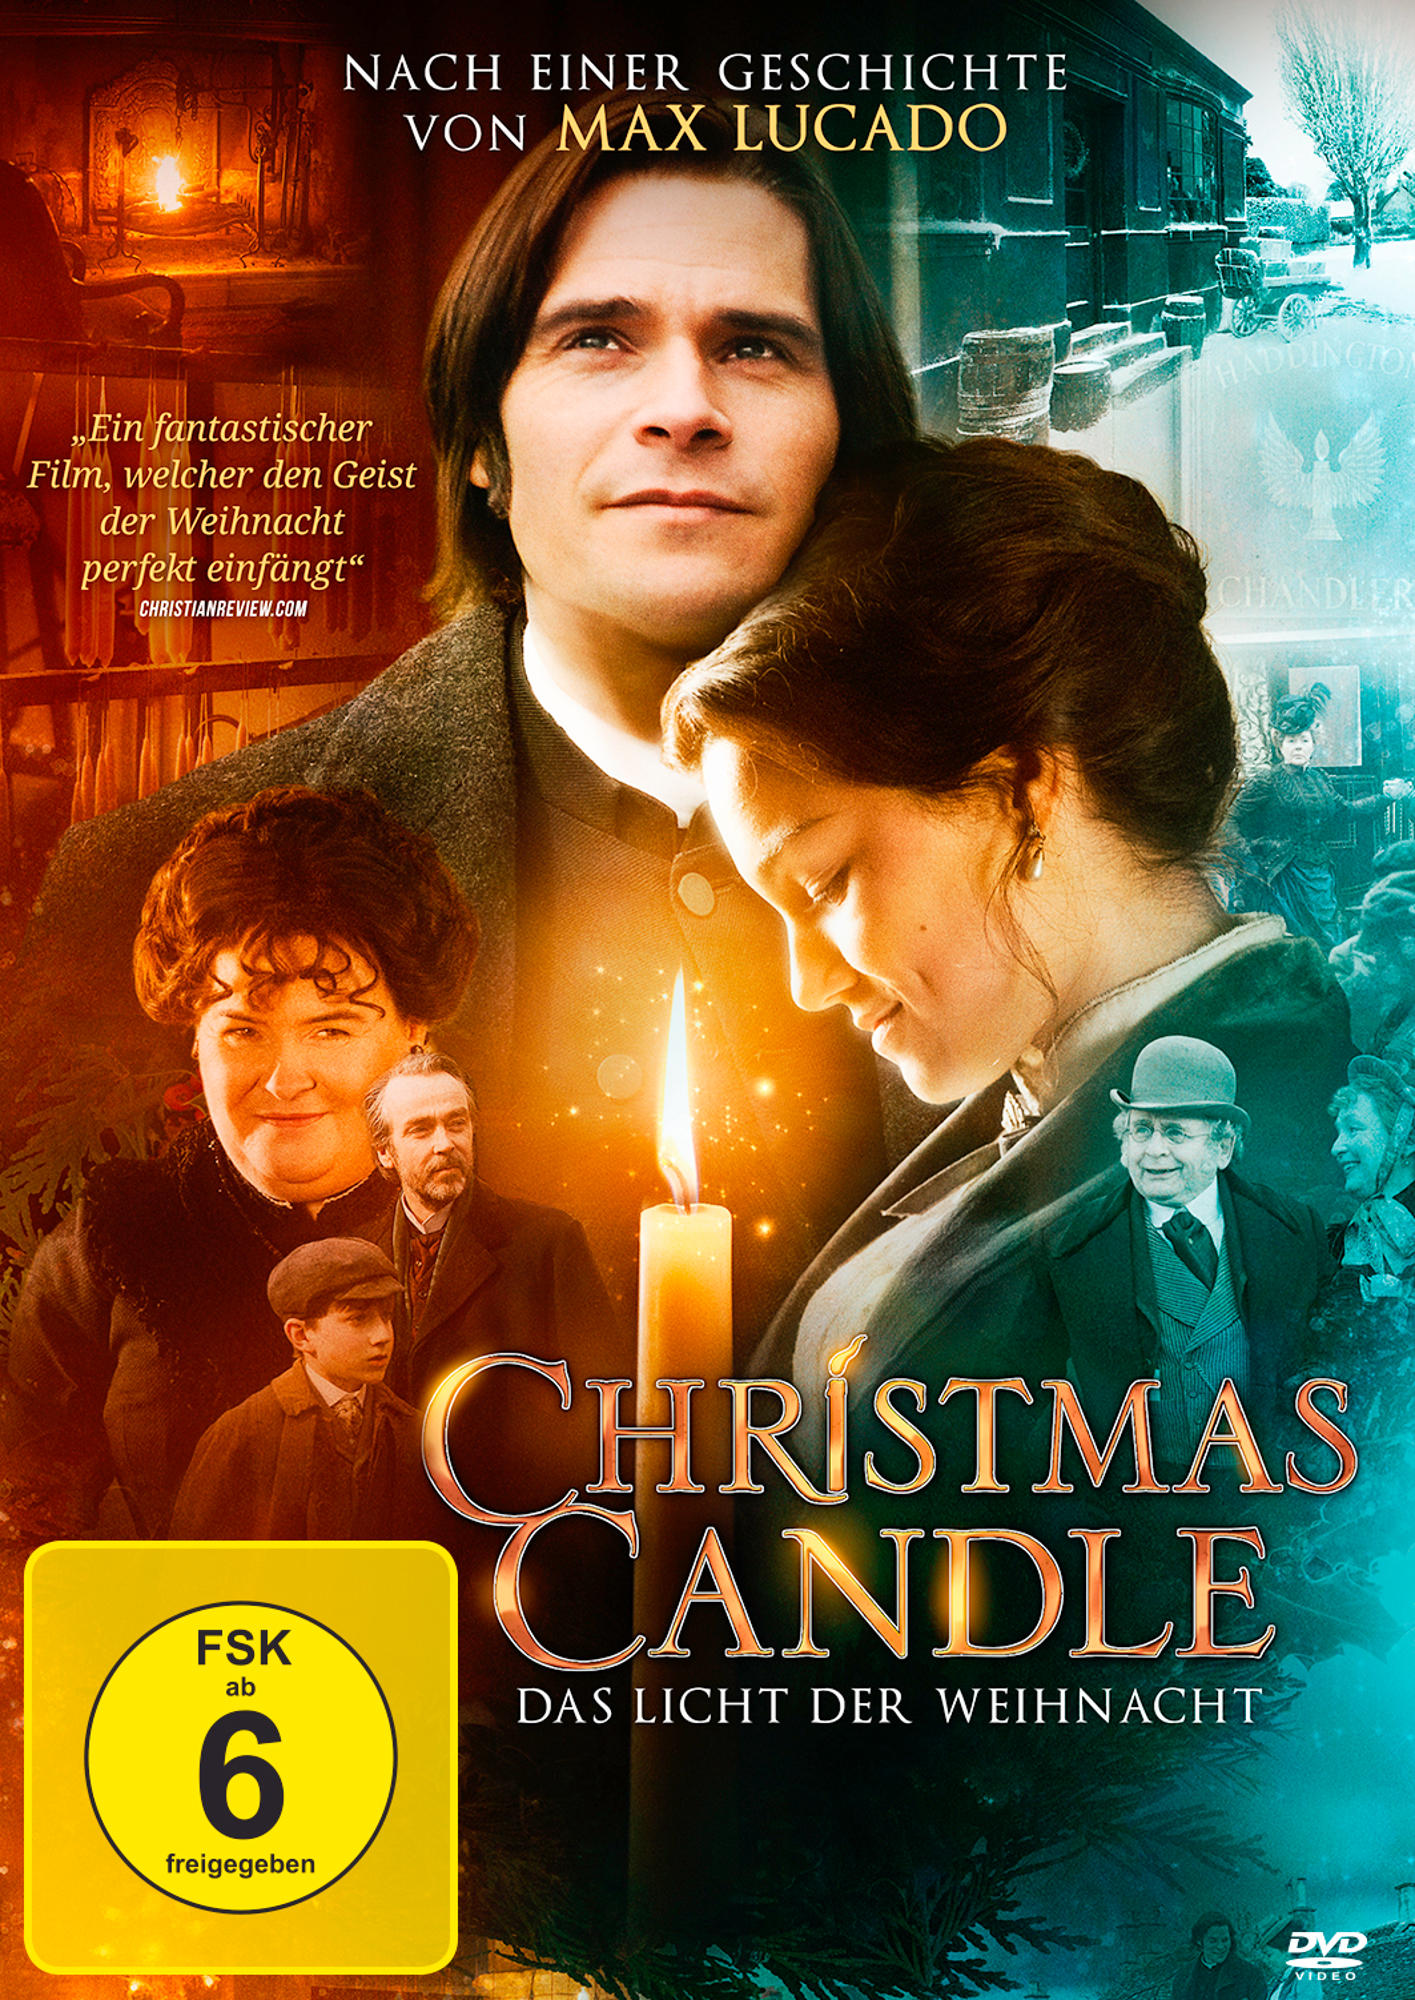 Candle Christmas Licht Das Weihnachtsnacht der - DVD